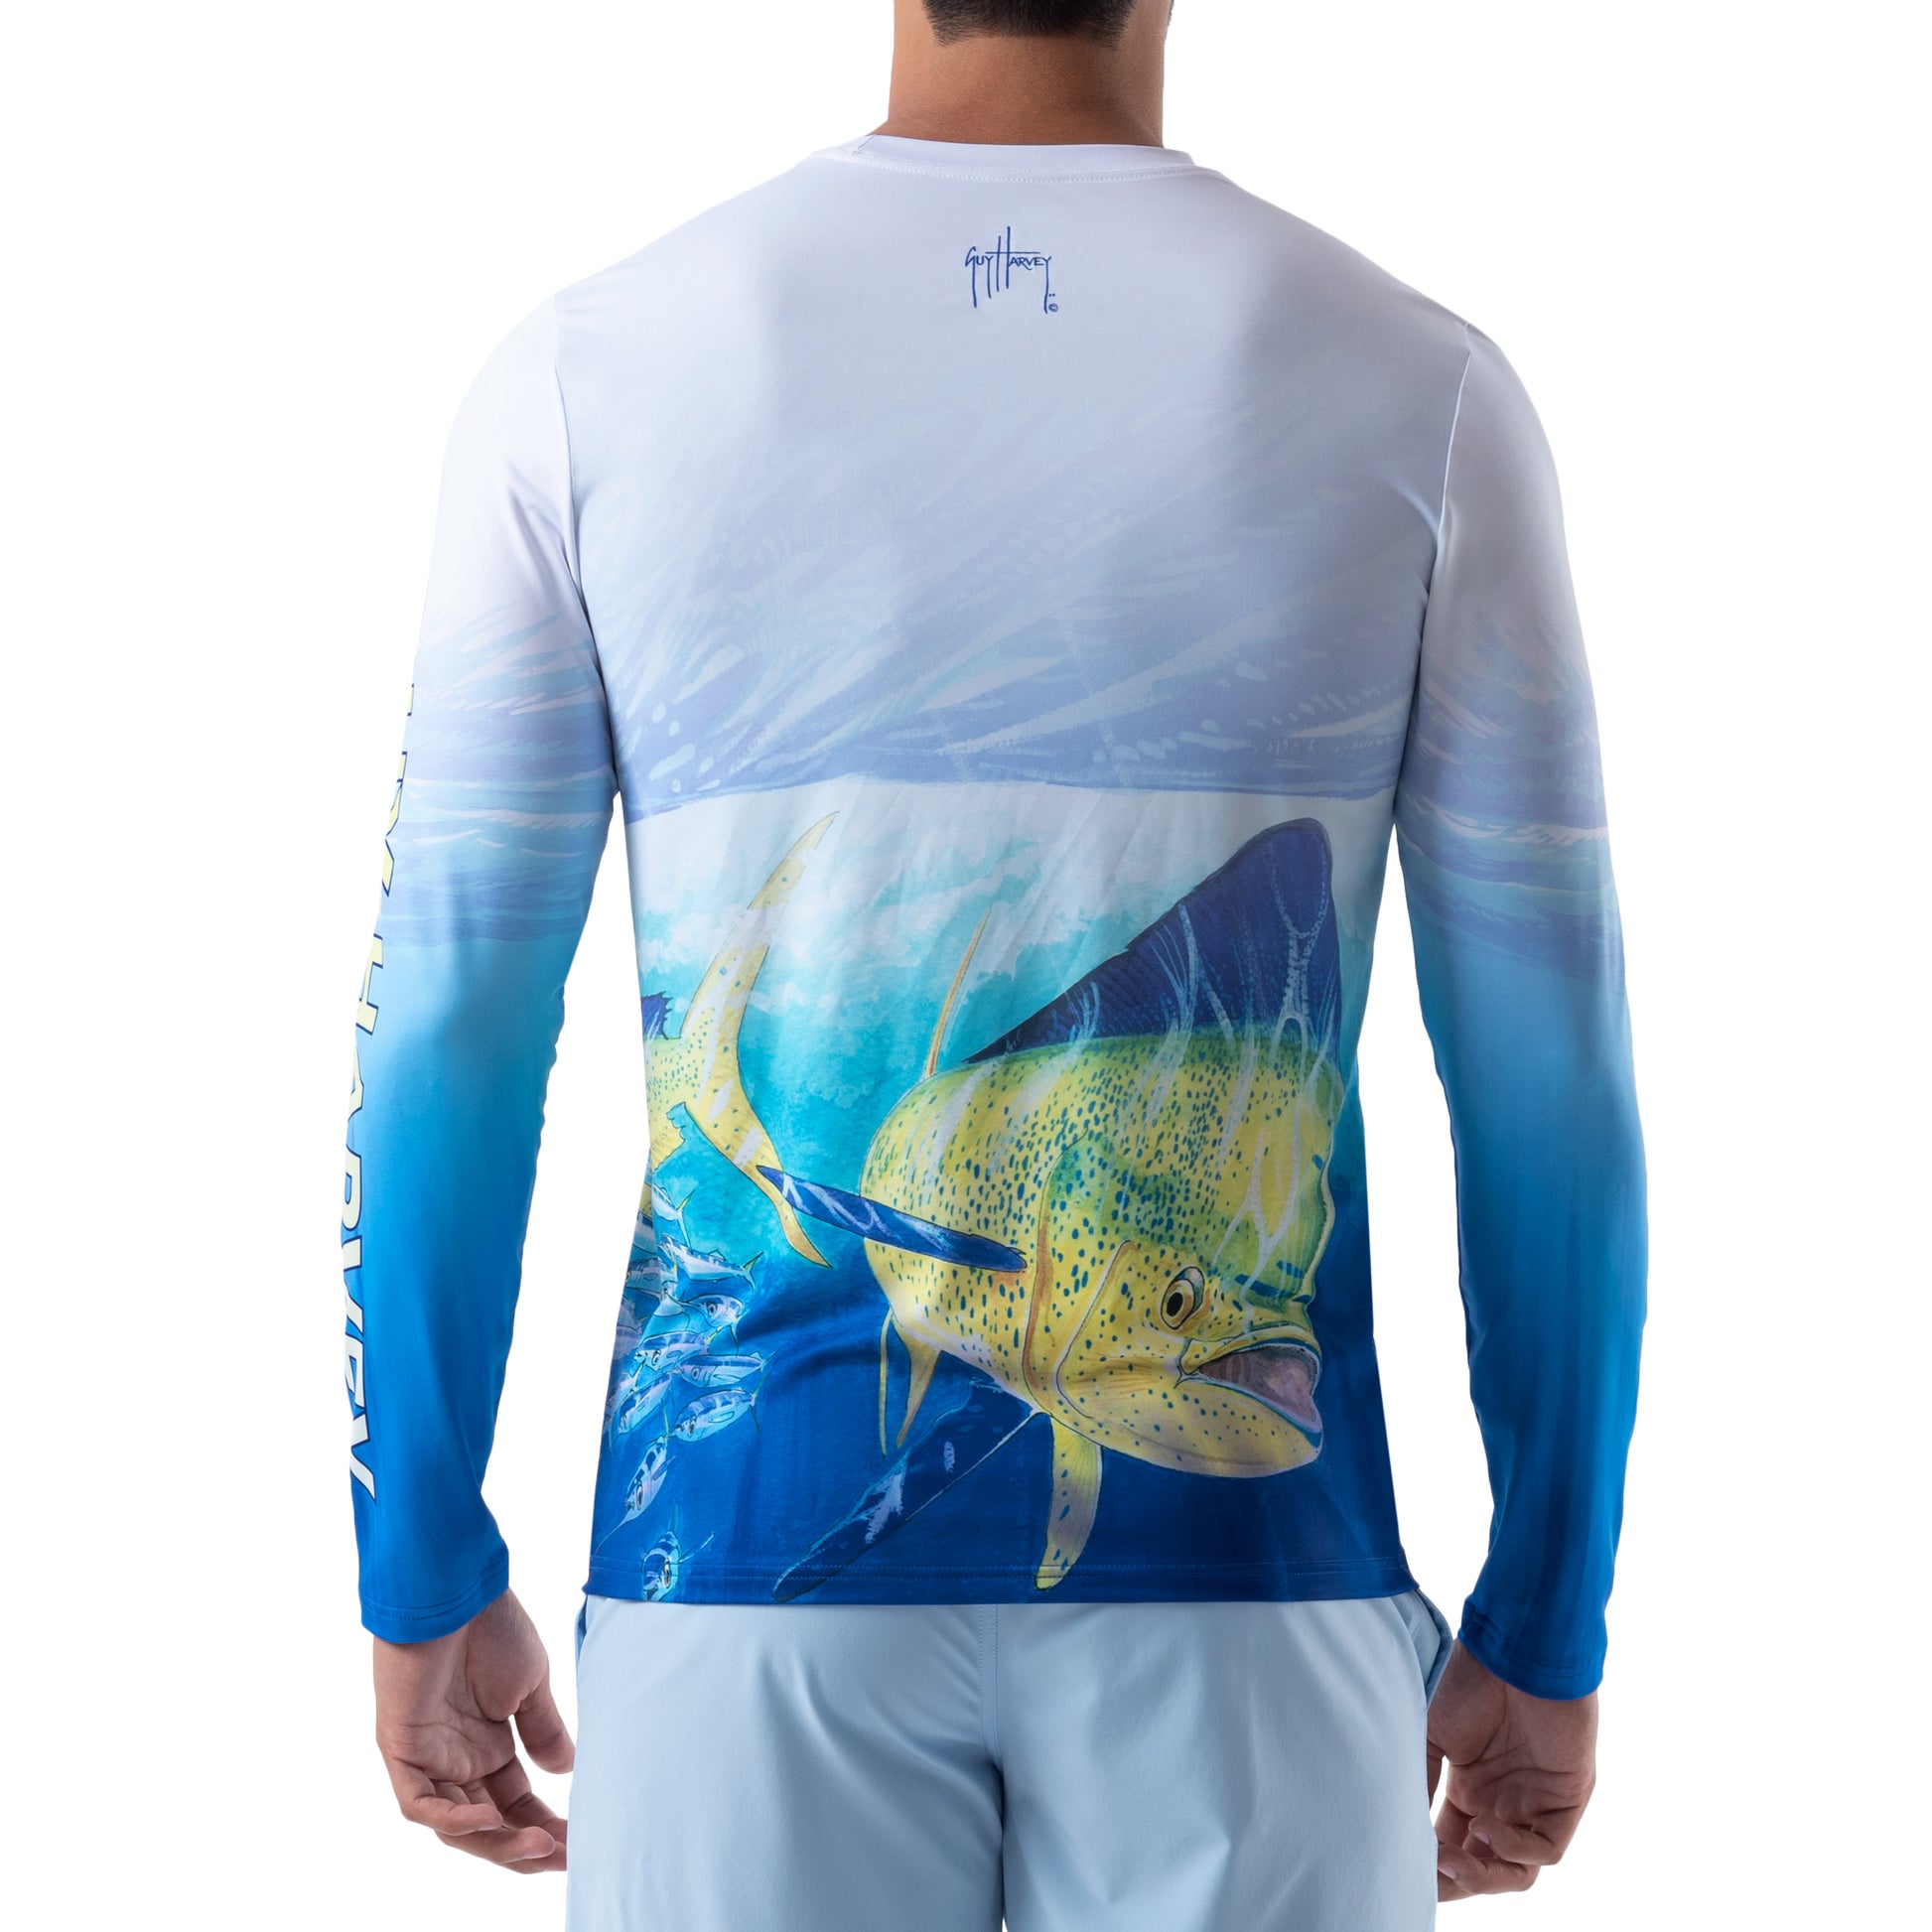 Guy Harvey Mahi Bluewater Wear Hawaiian Shirt XL Fishing Discounted  Shipping